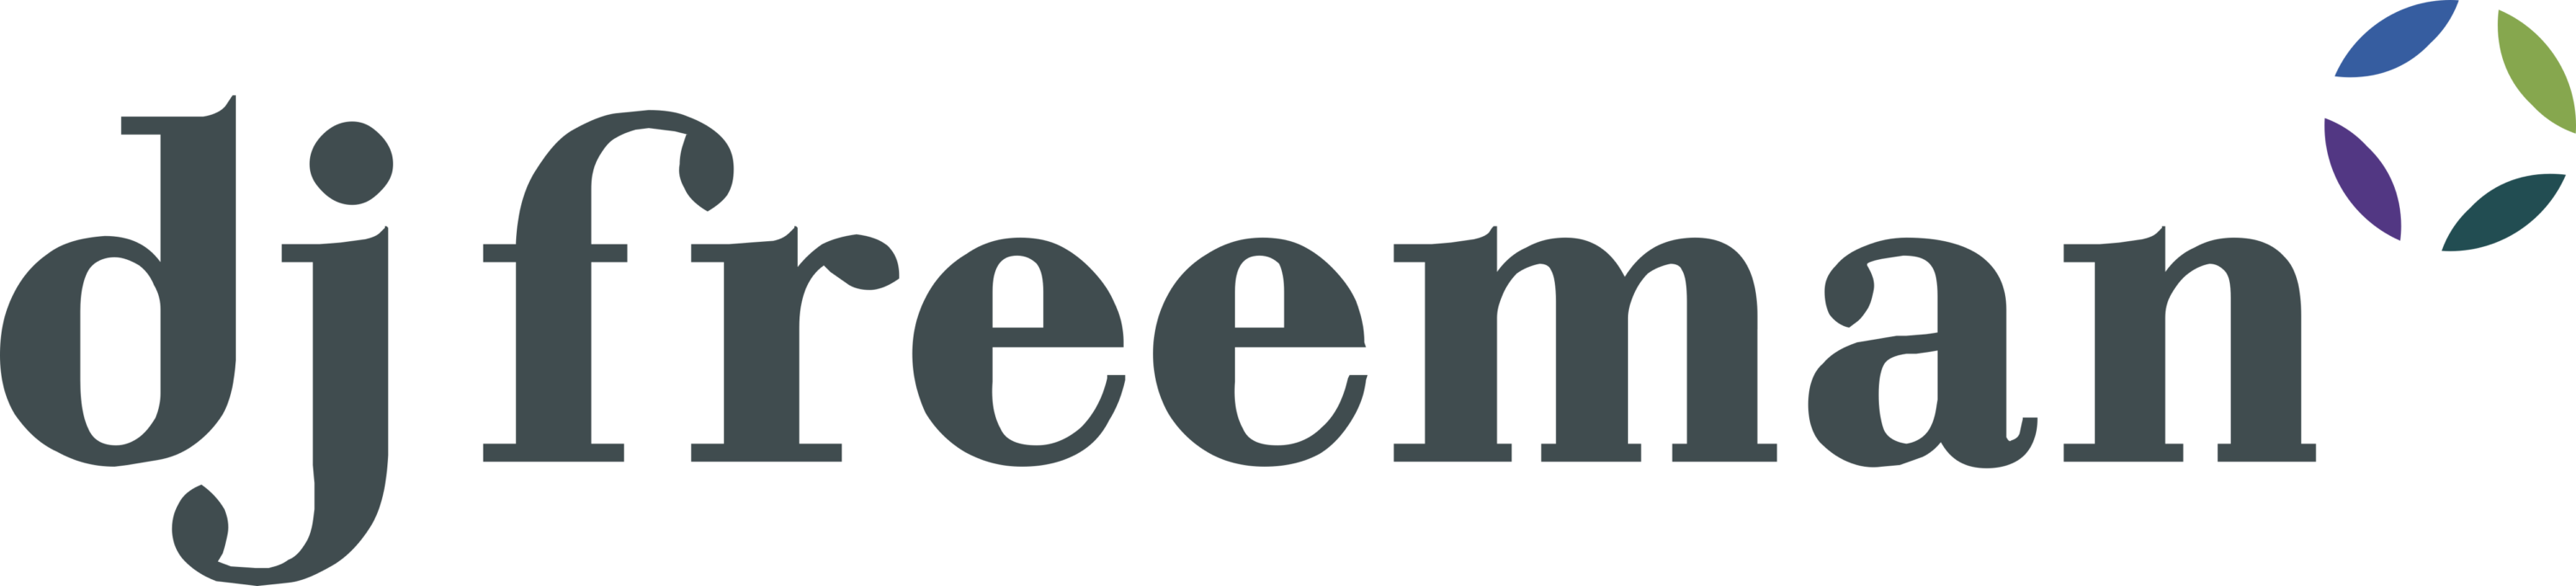 Dj Freeman Logo